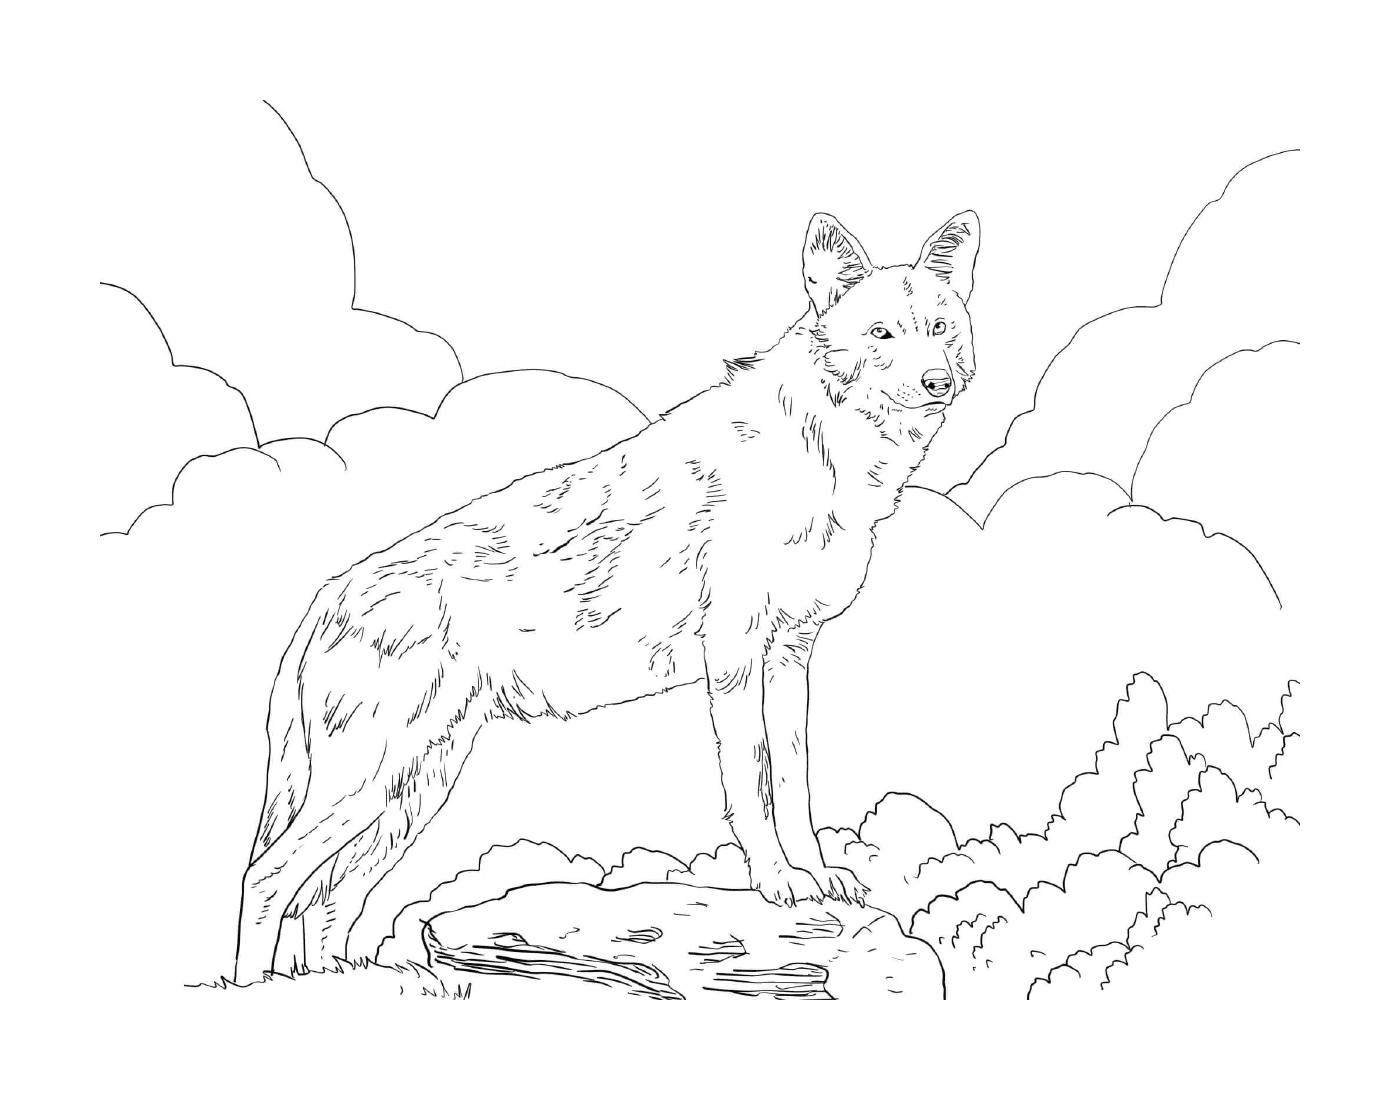  حيوان يقف على صخرة في حقل 